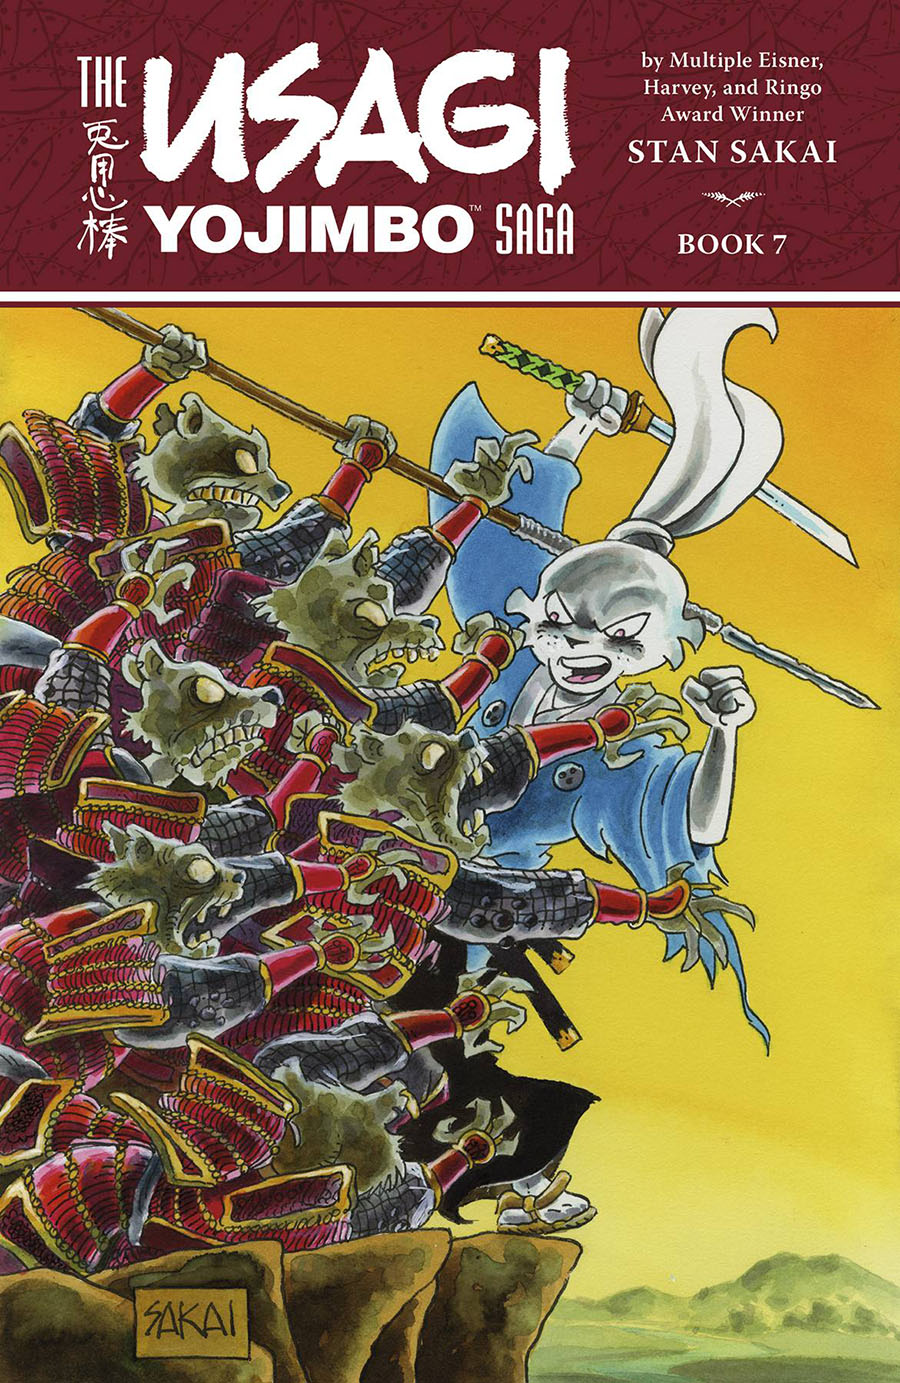 Usagi Yojimbo Saga Vol 7 TP 2nd Edition